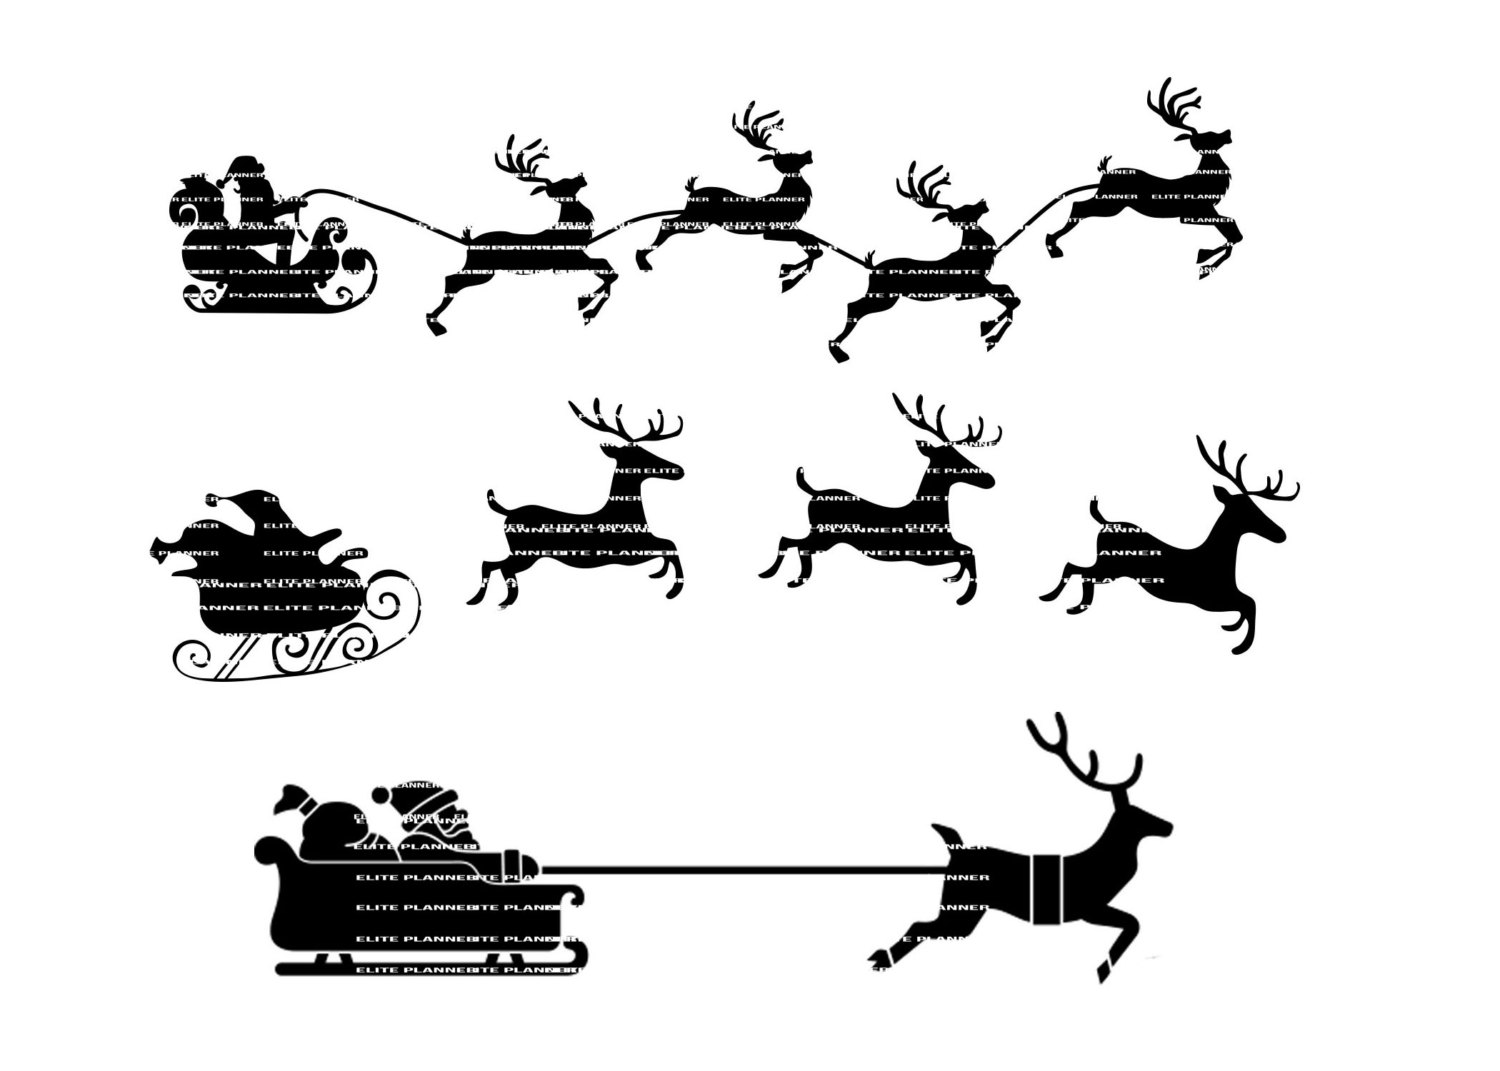 Reindeer clip art 